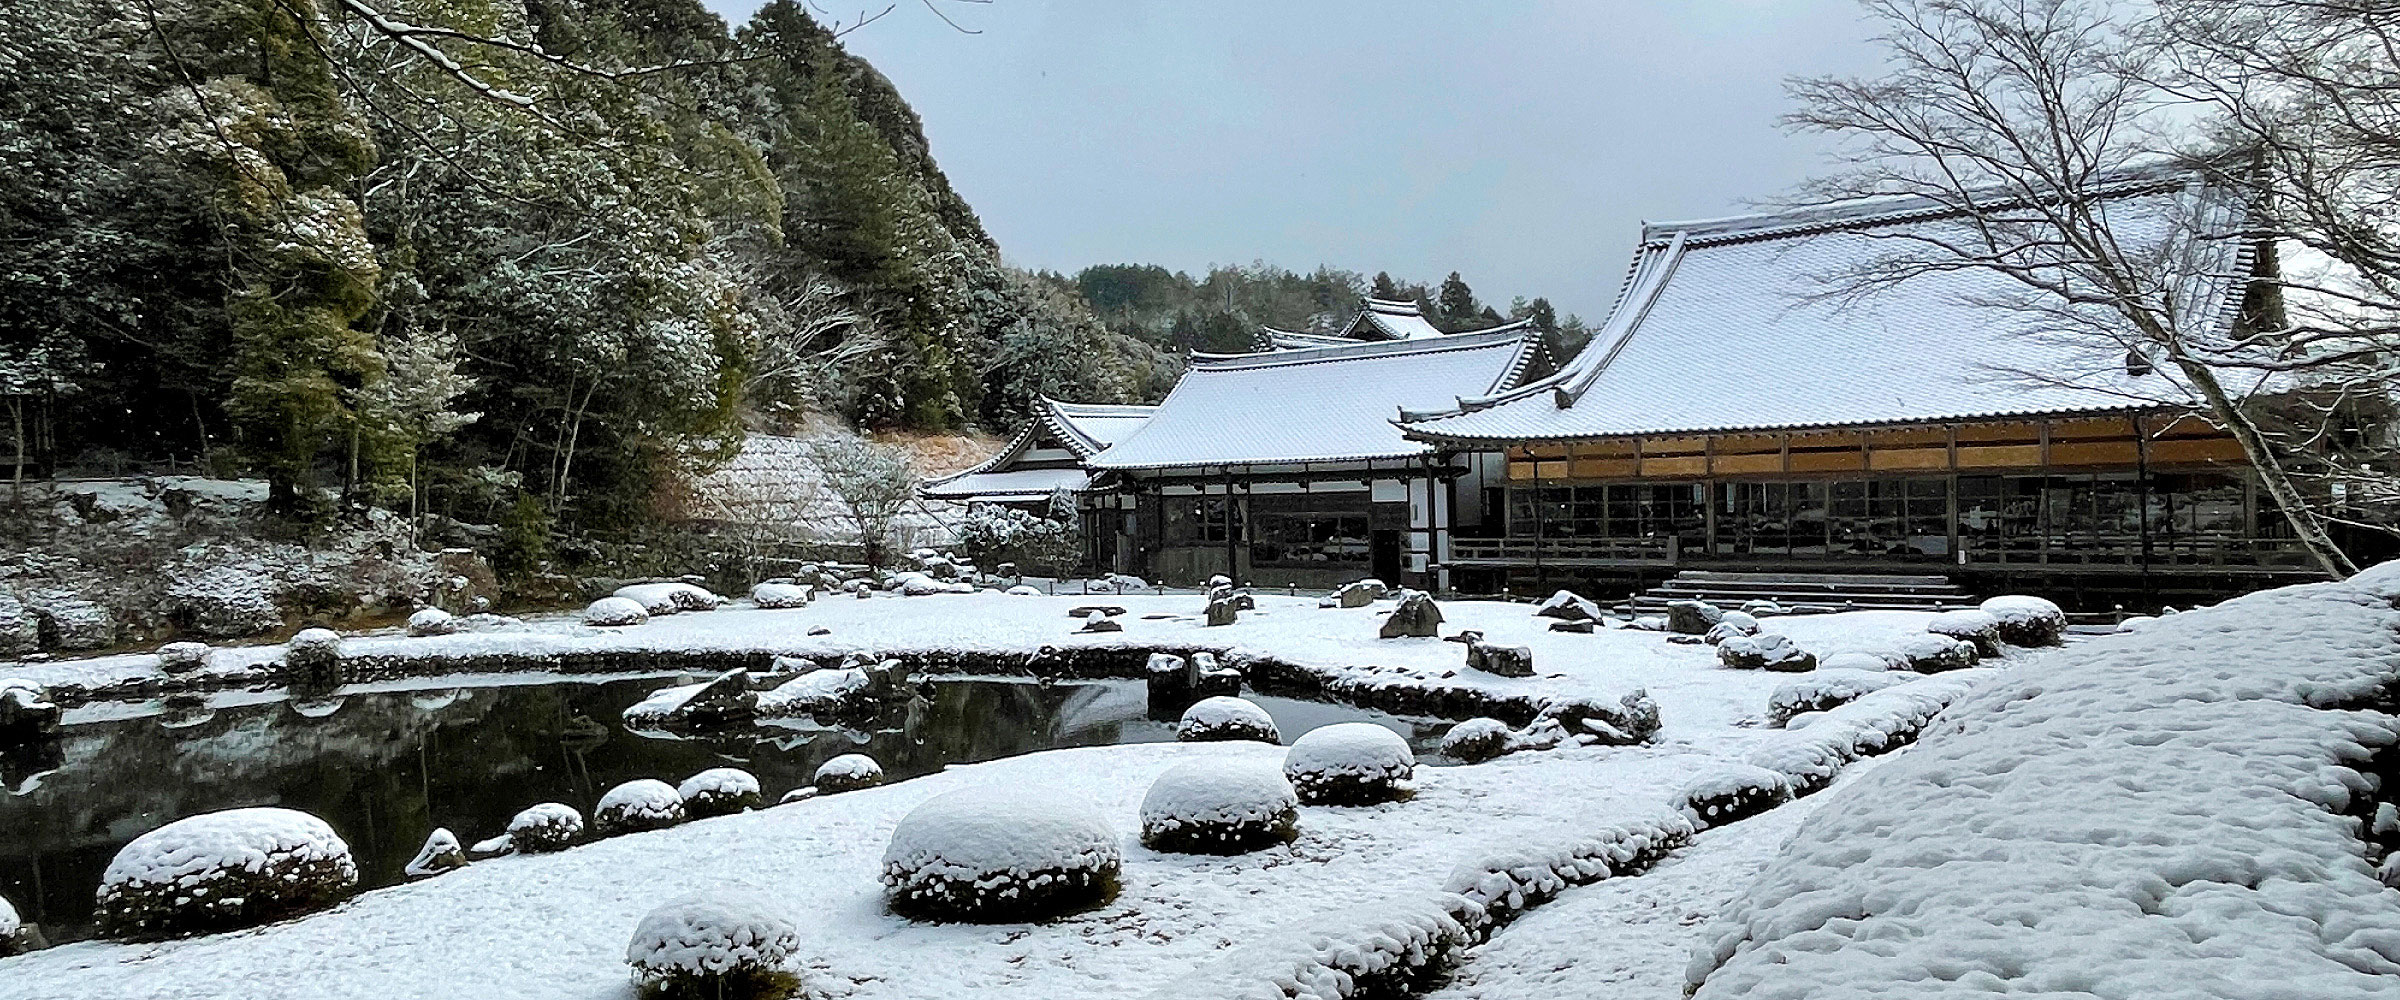 雪の常栄寺雪舟庭